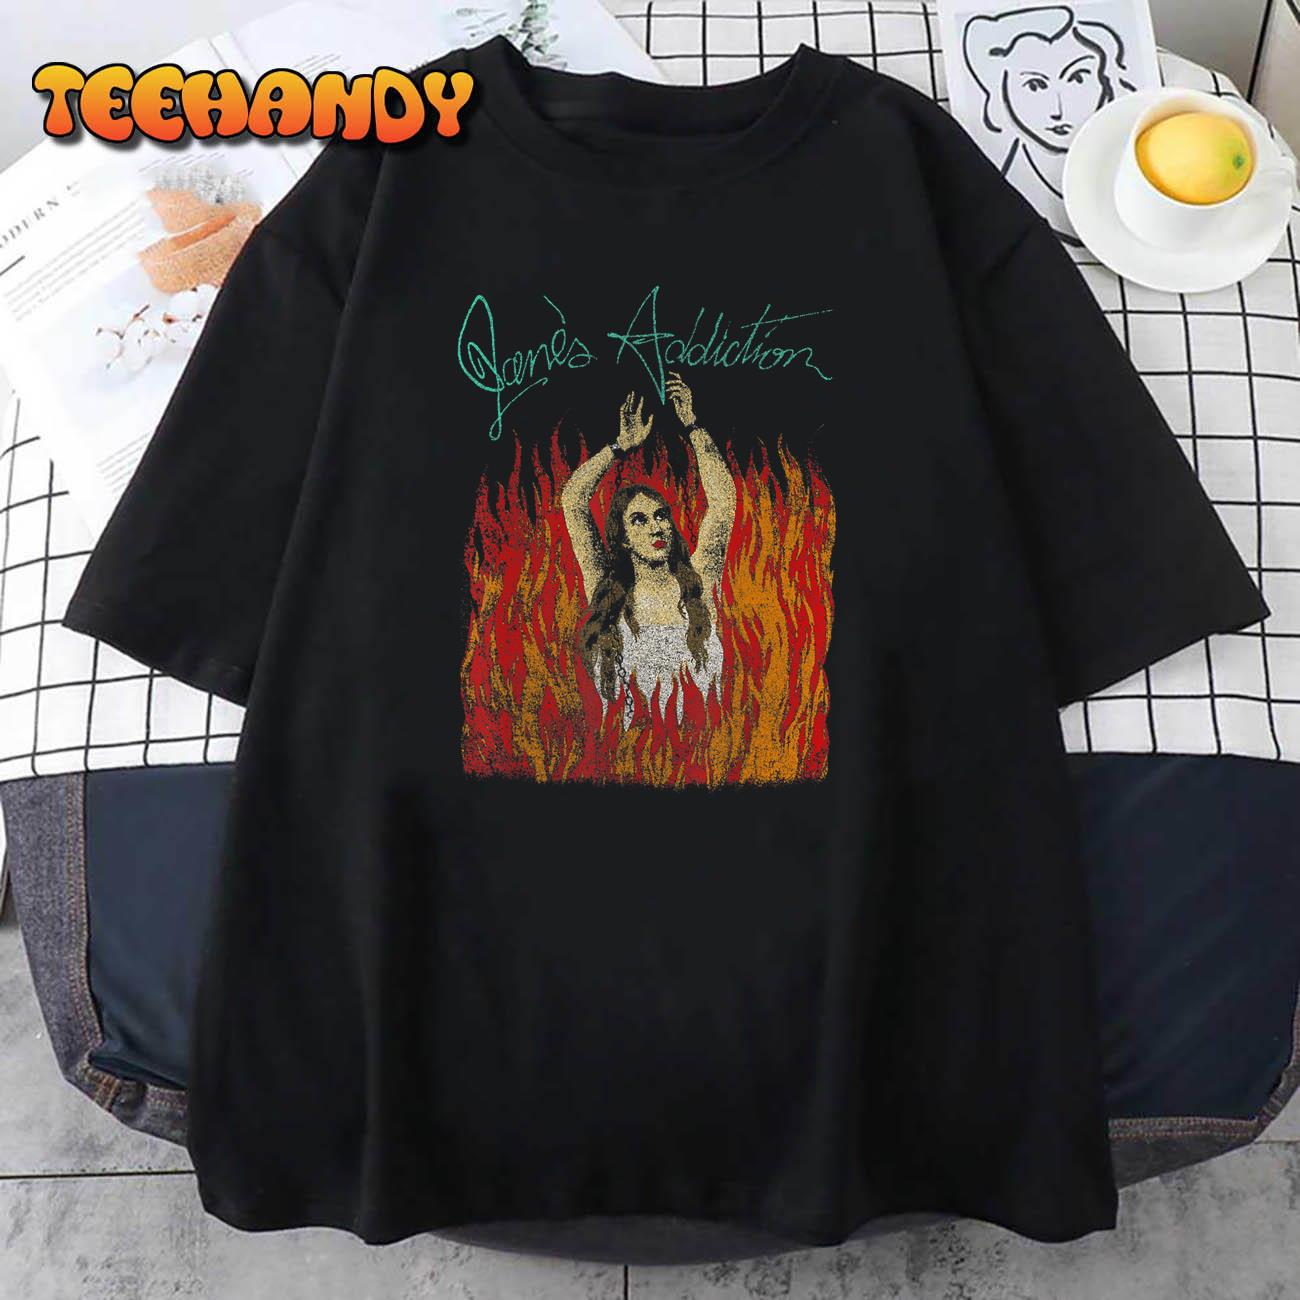 Jane’s Addiction – El Ritual De Lo Habitual 1989 T-Shirt